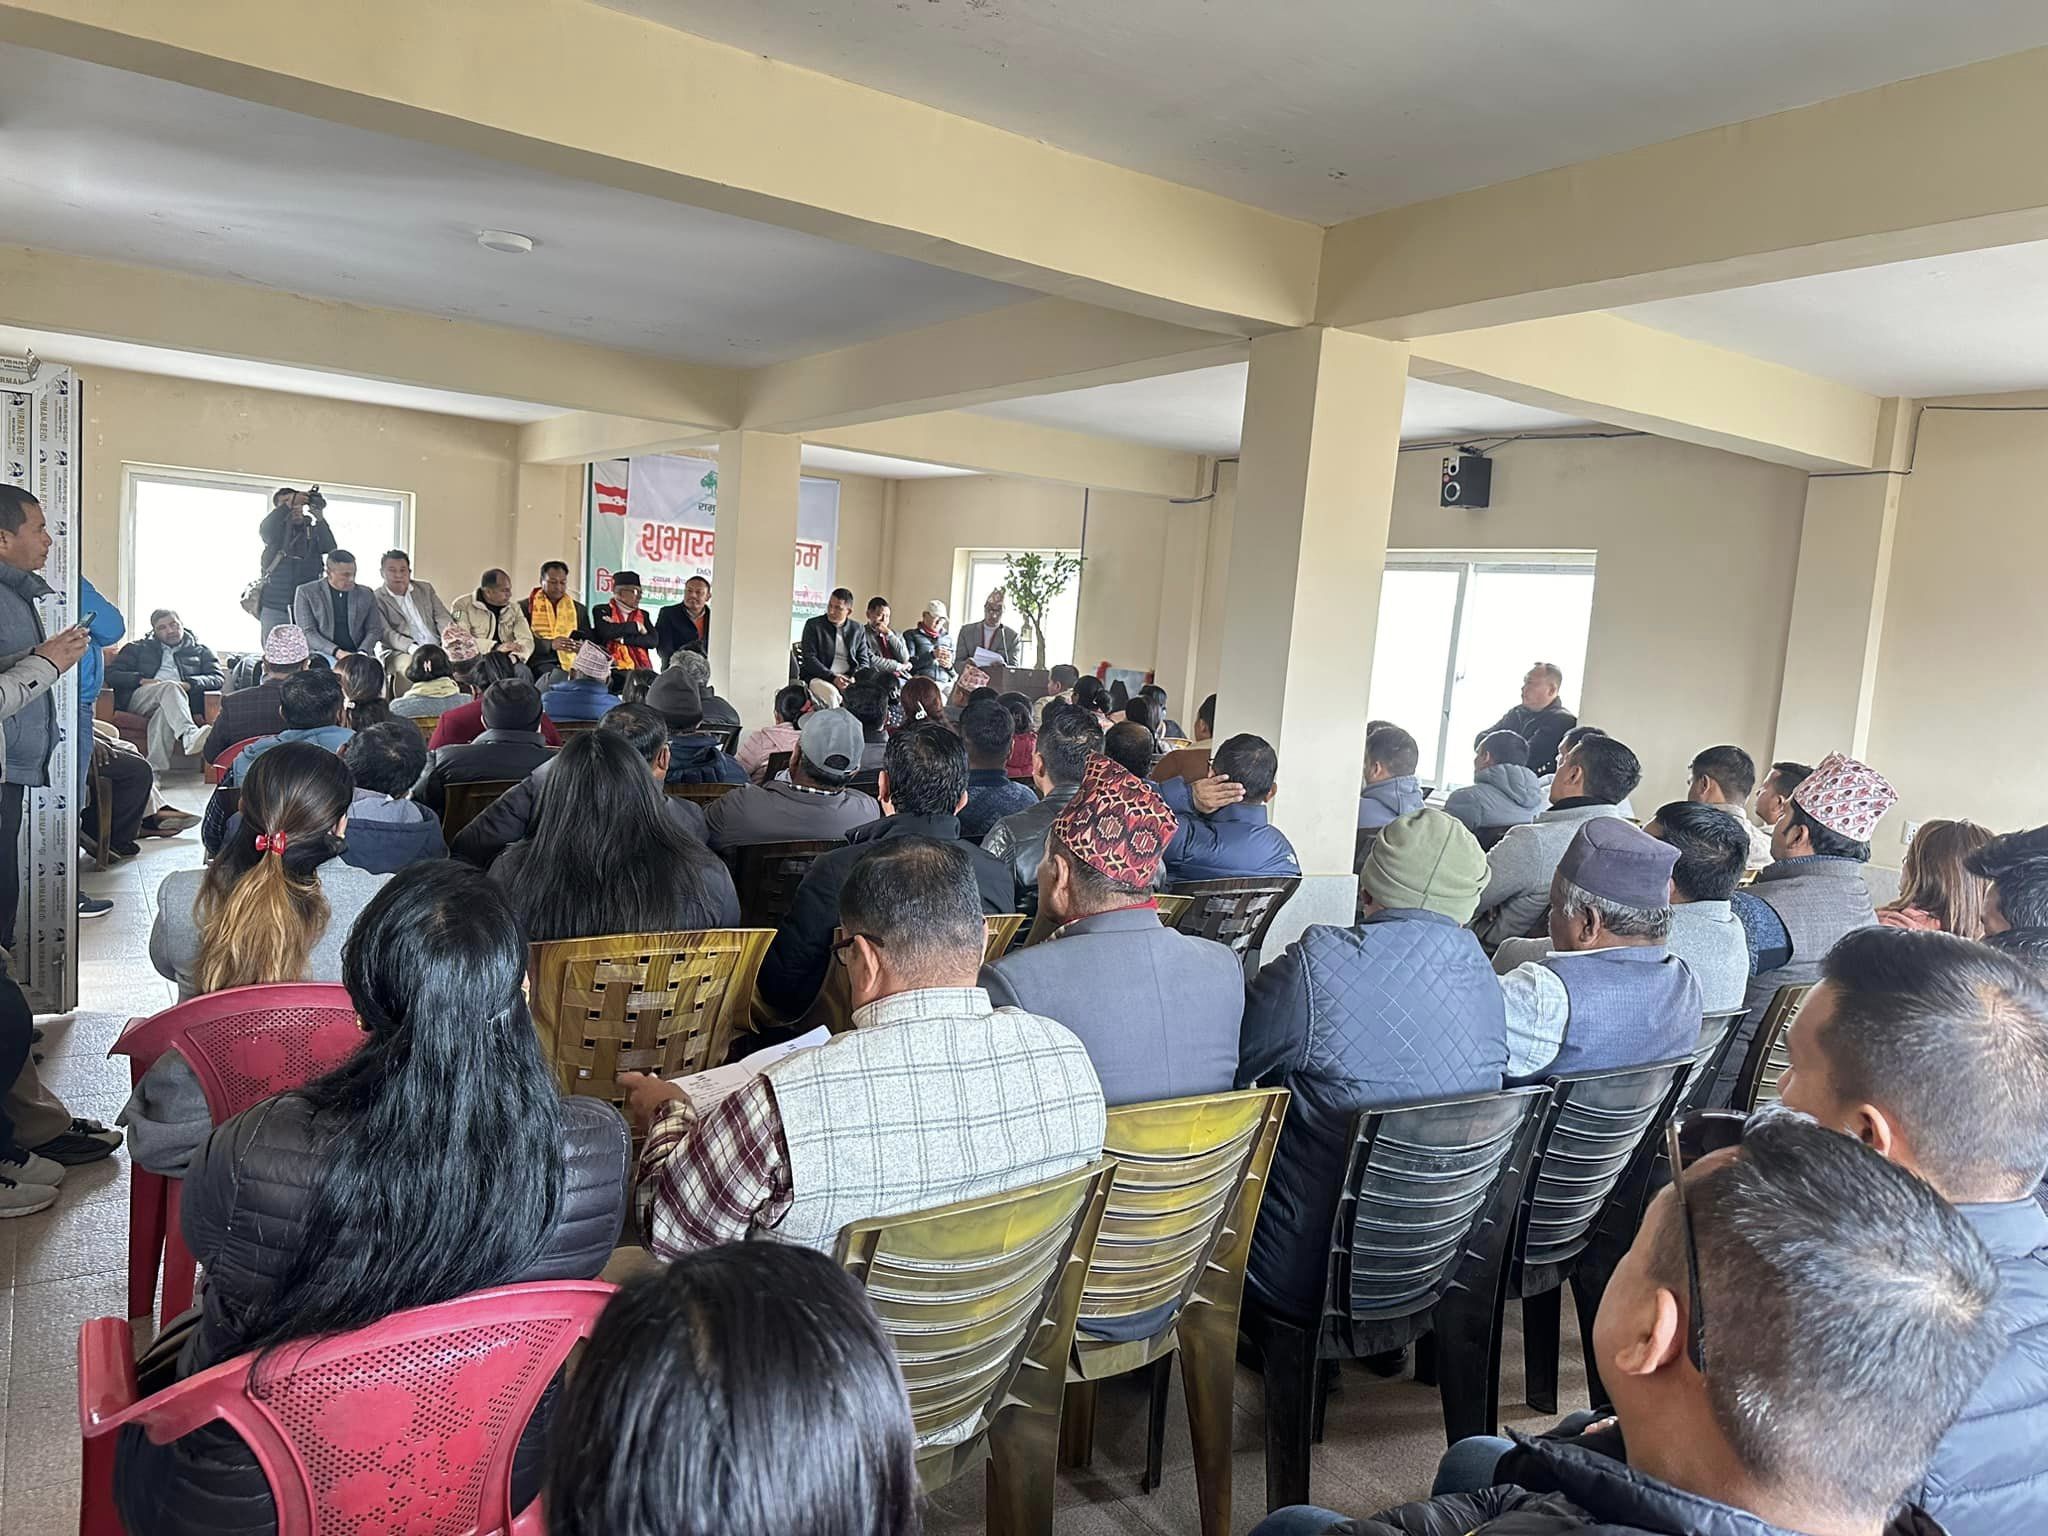 जनताका अपेक्षा, सुझाव र गुनासो बुझ्न नेपाली कांग्रेस काभ्रे समुदायमा जाँदै